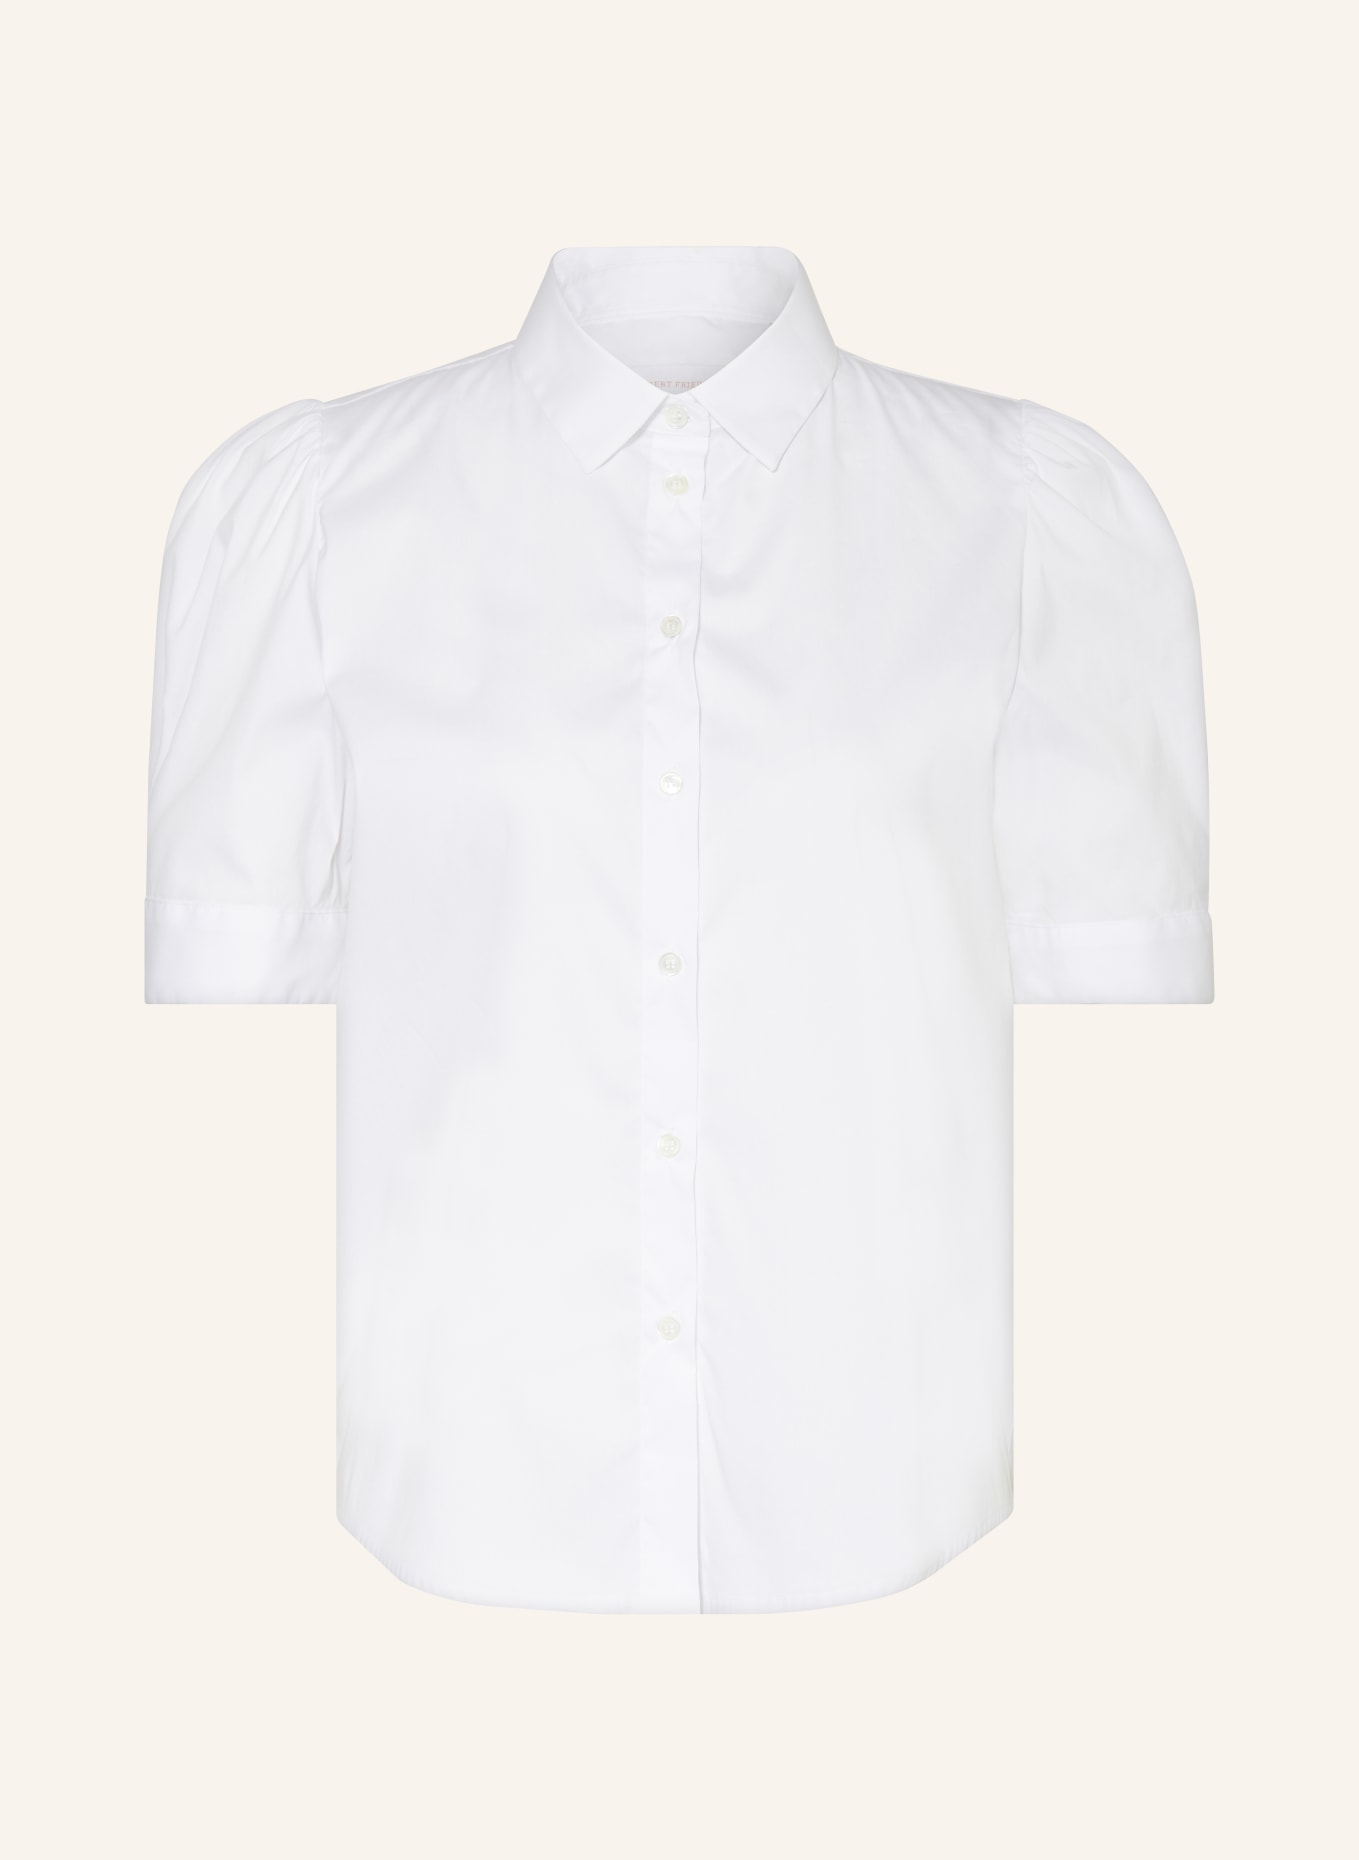 ROBERT FRIEDMAN Shirt blouse SONNYL, Color: WHITE (Image 1)